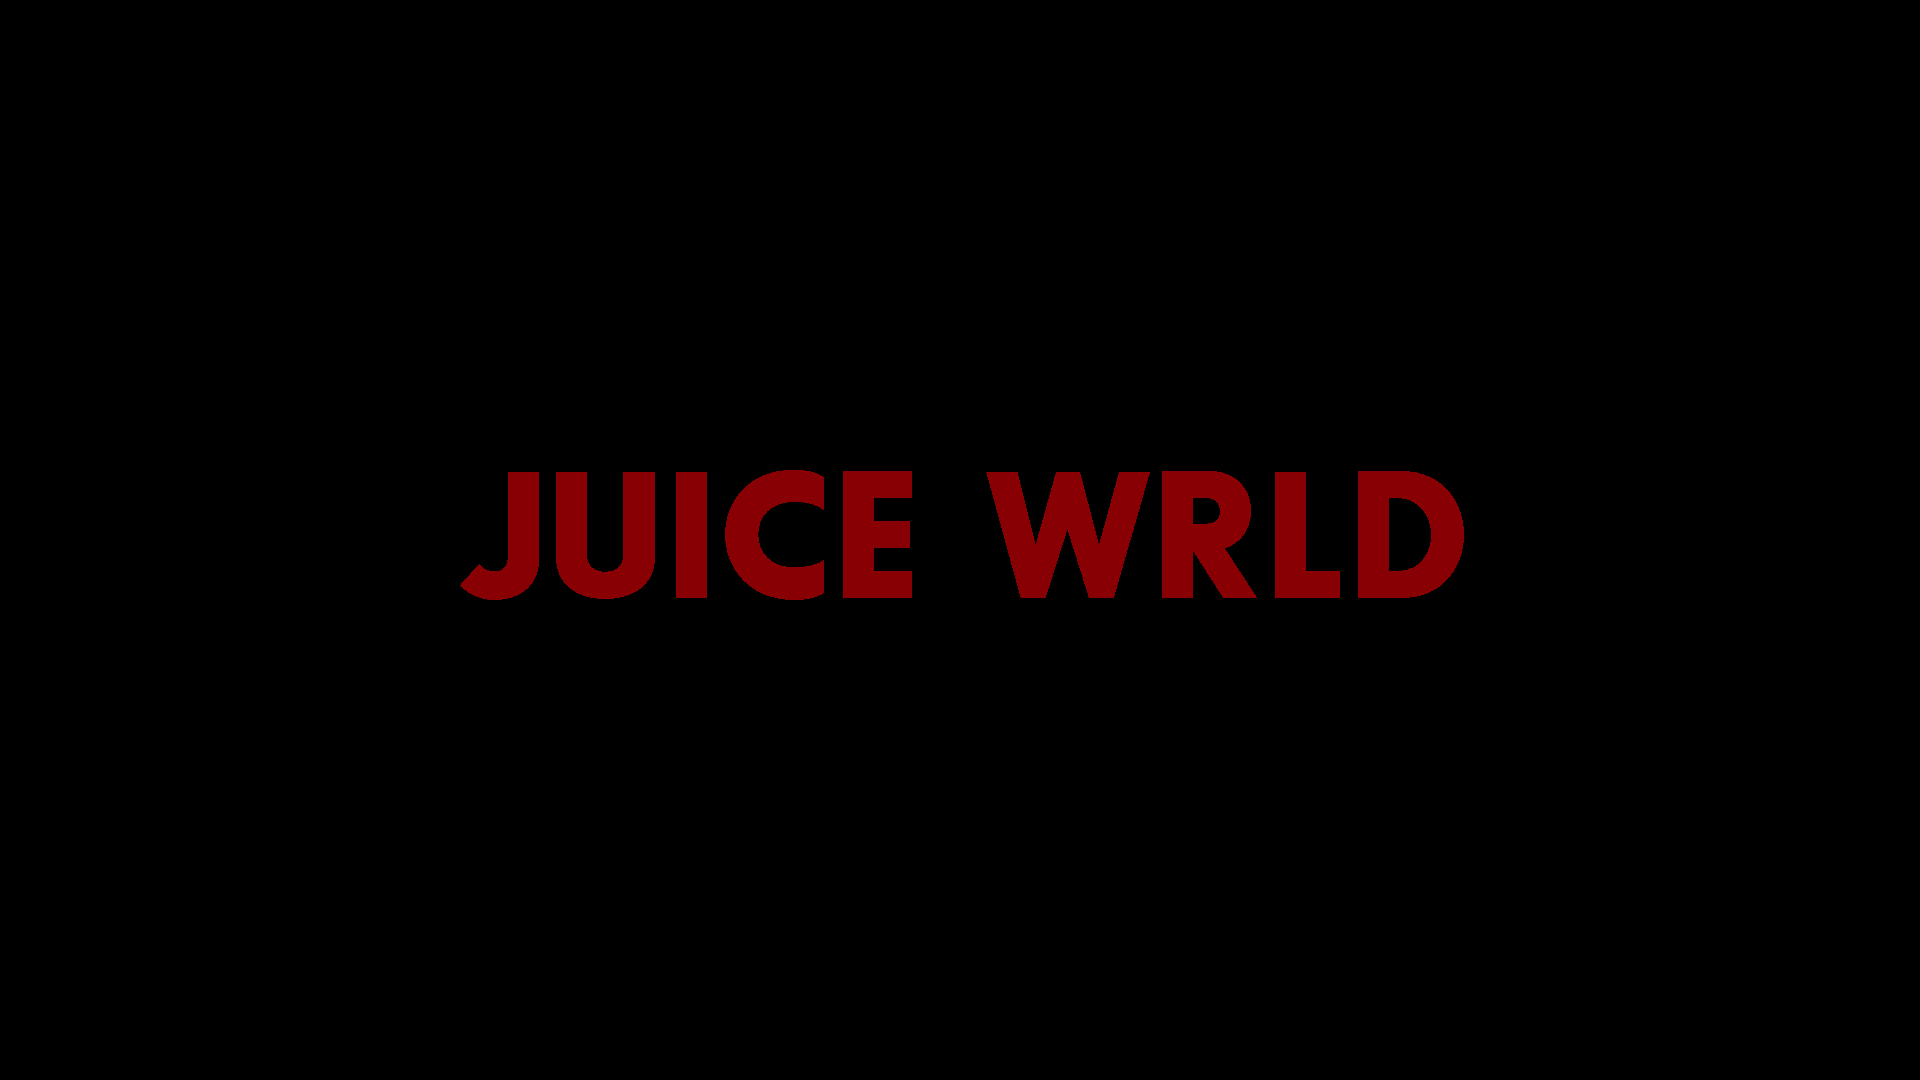 1920x1080 Juice Wrld Wallpaper - Tải xuống #juicewrldwallpaperiphone Juice Wrld vào năm 2020. Nước ép, Drake (lời bài hát), Trích dẫn bài hát